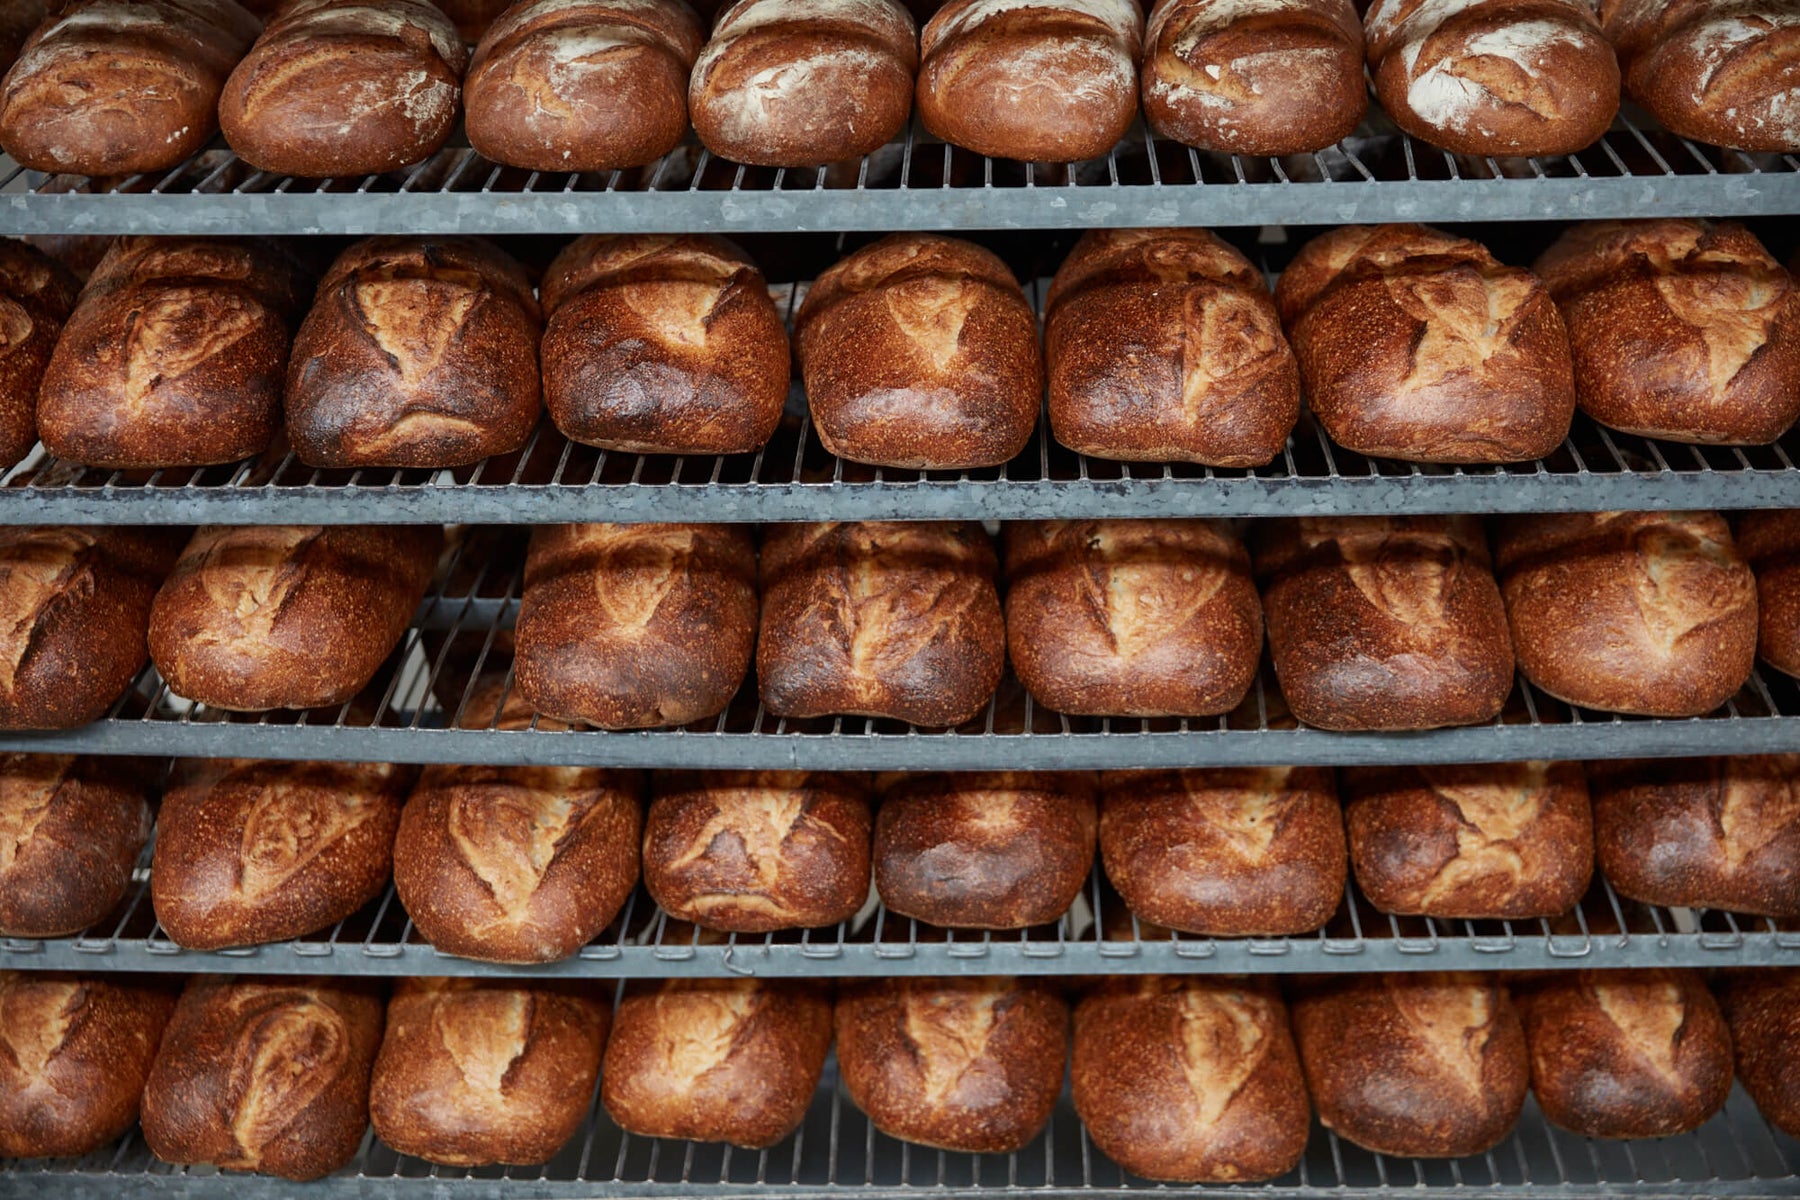 Shelves of freshly baked, golden brown Starter Bakery sourdough loaves